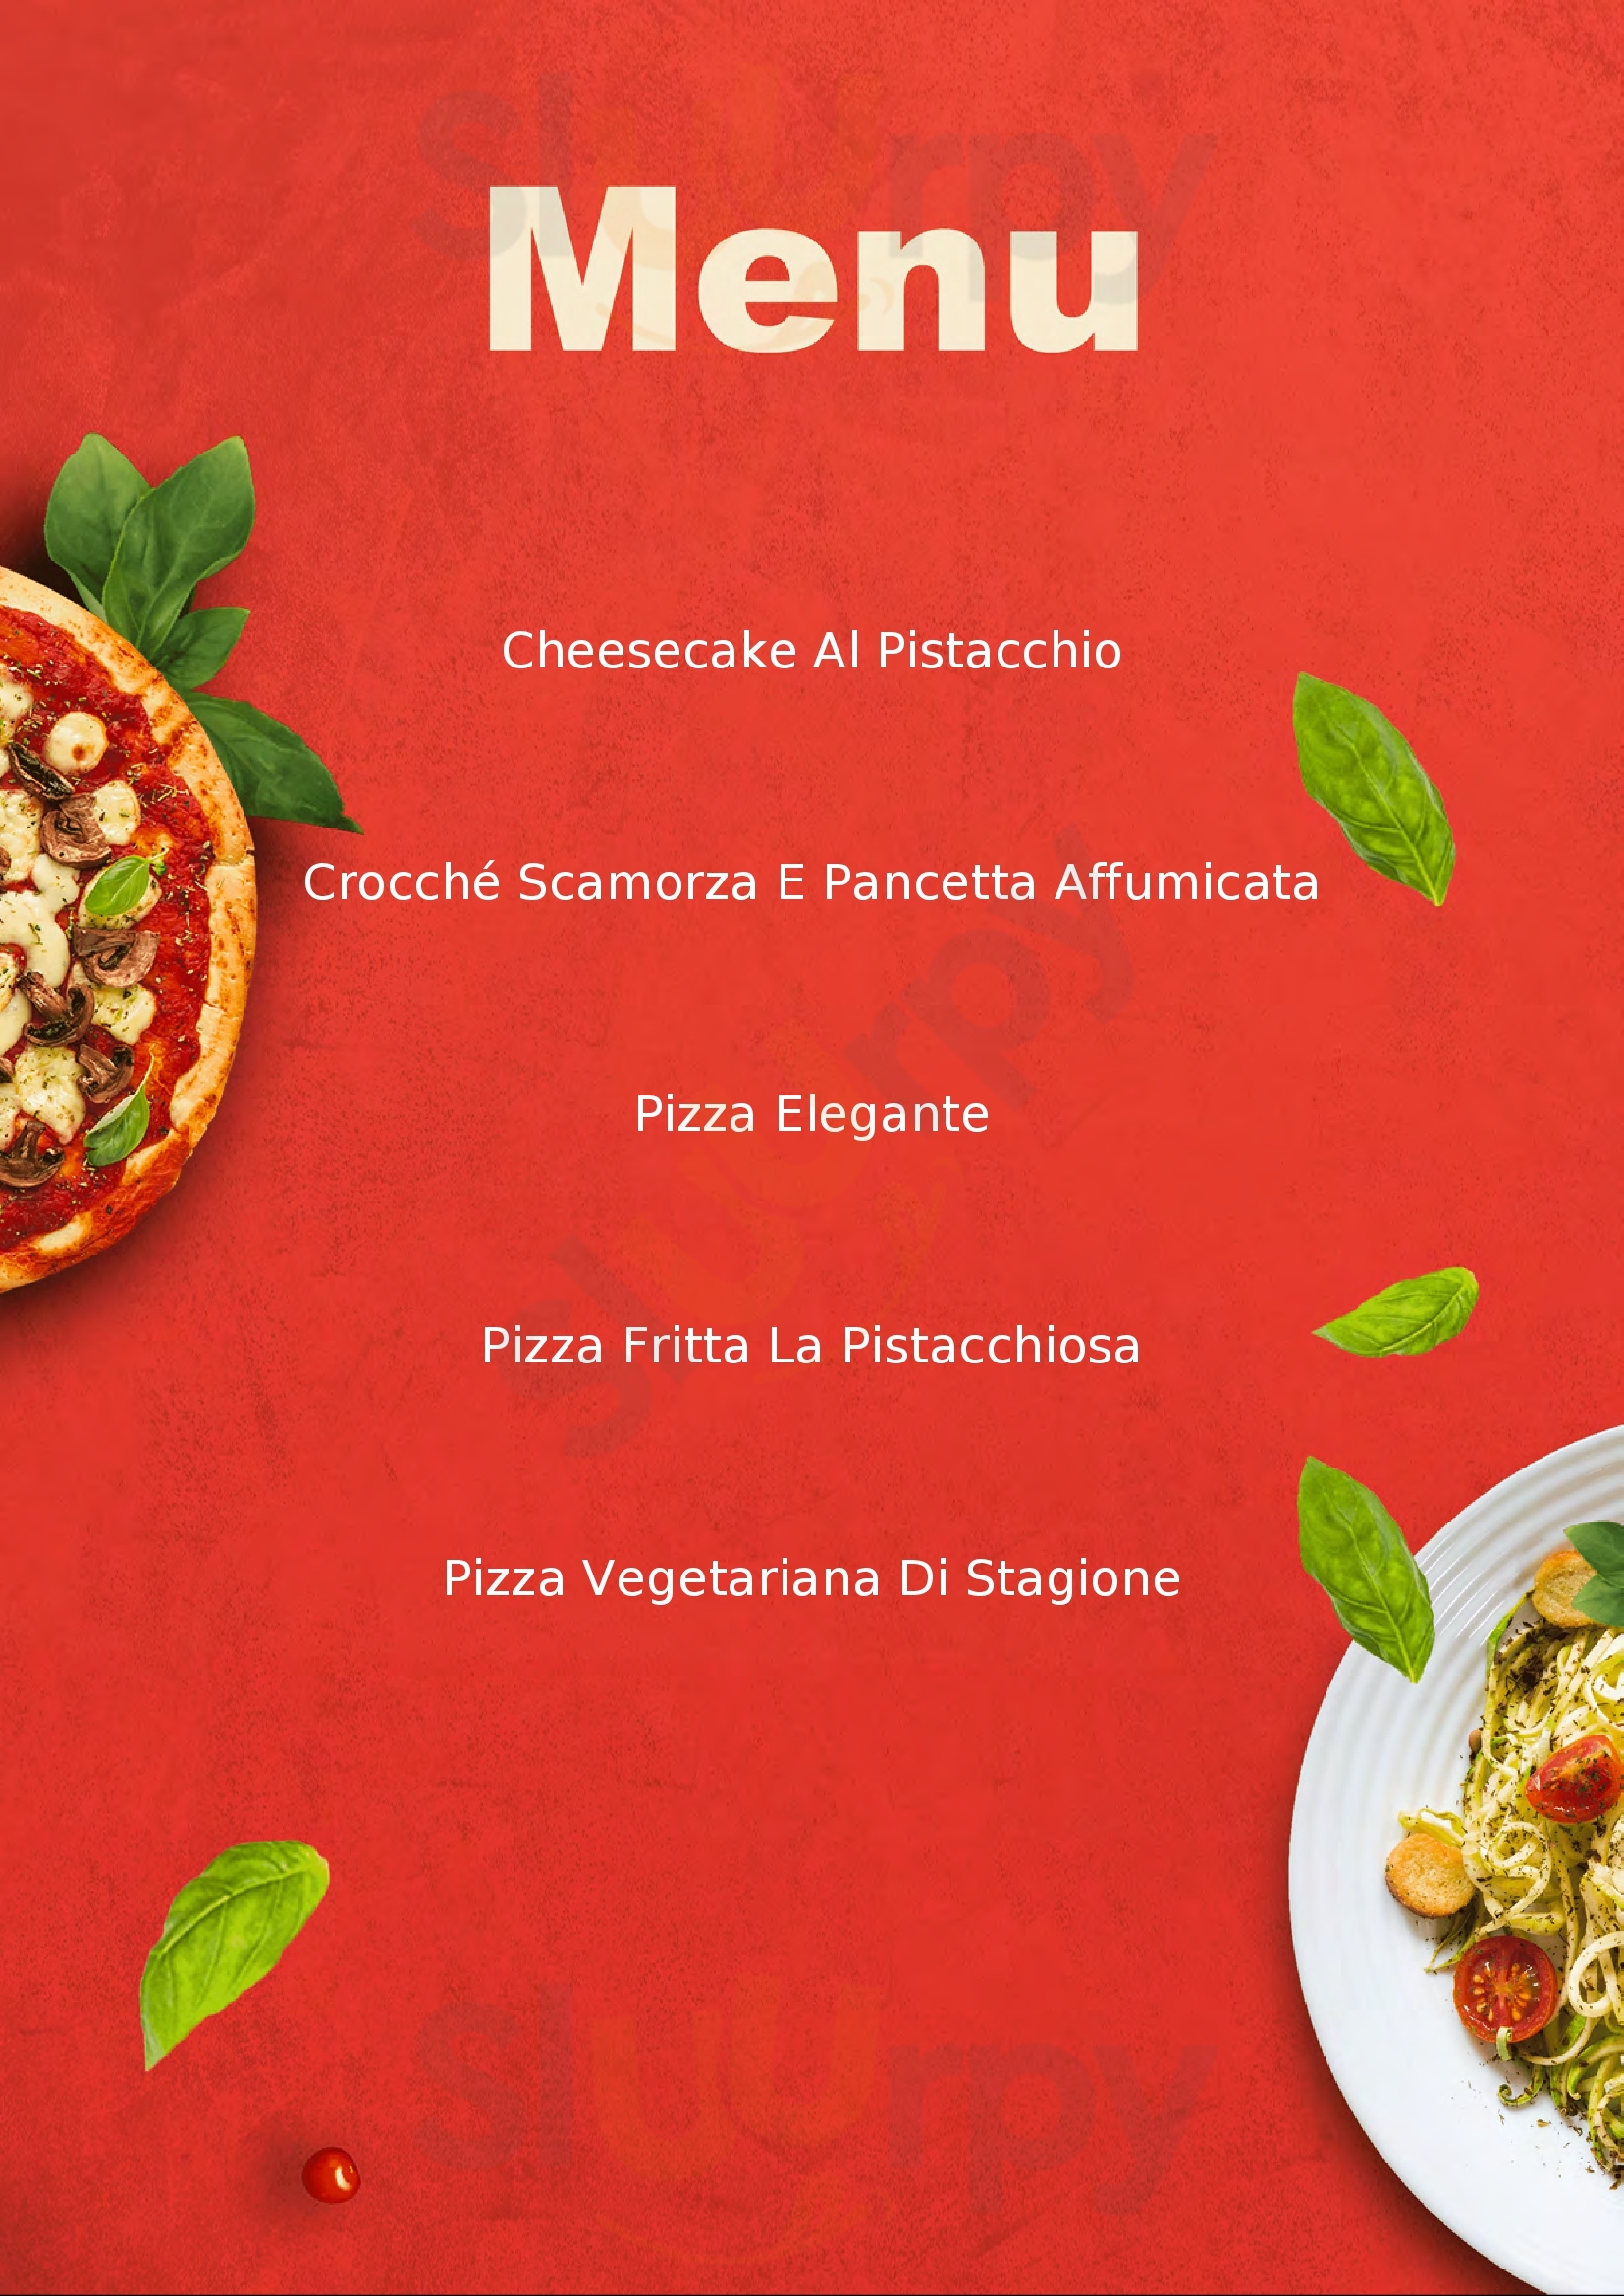 Invictus Pizza Pescara menù 1 pagina